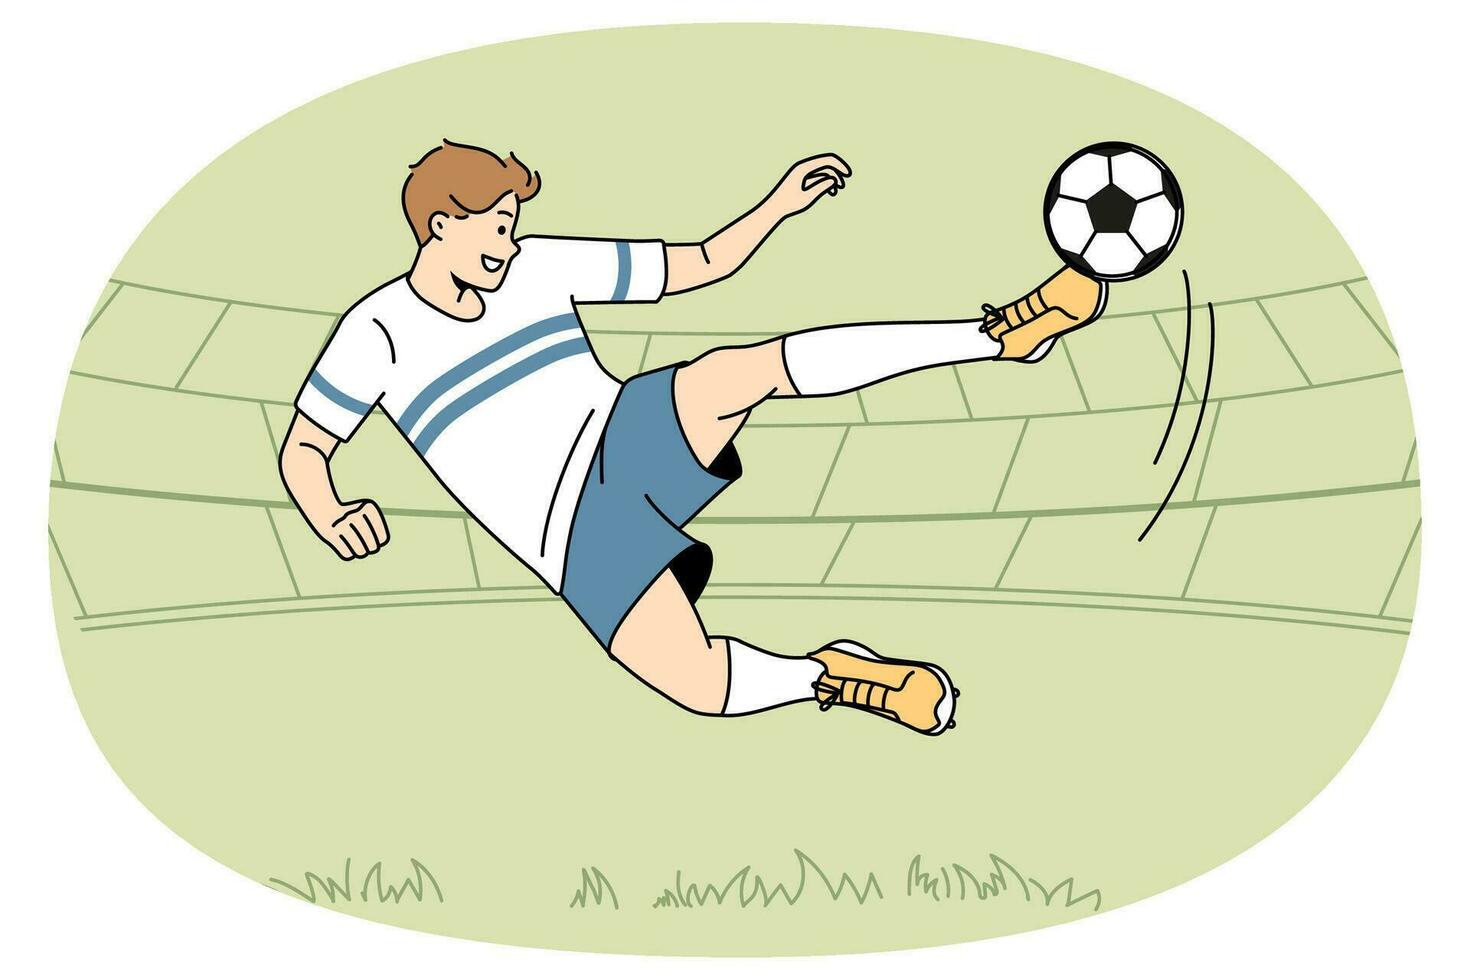 jogador de futebol chuta a bola no campo. jogador de futebol de uniforme marca gol na partida. conceito de esporte e jogo. ilustração vetorial. vetor